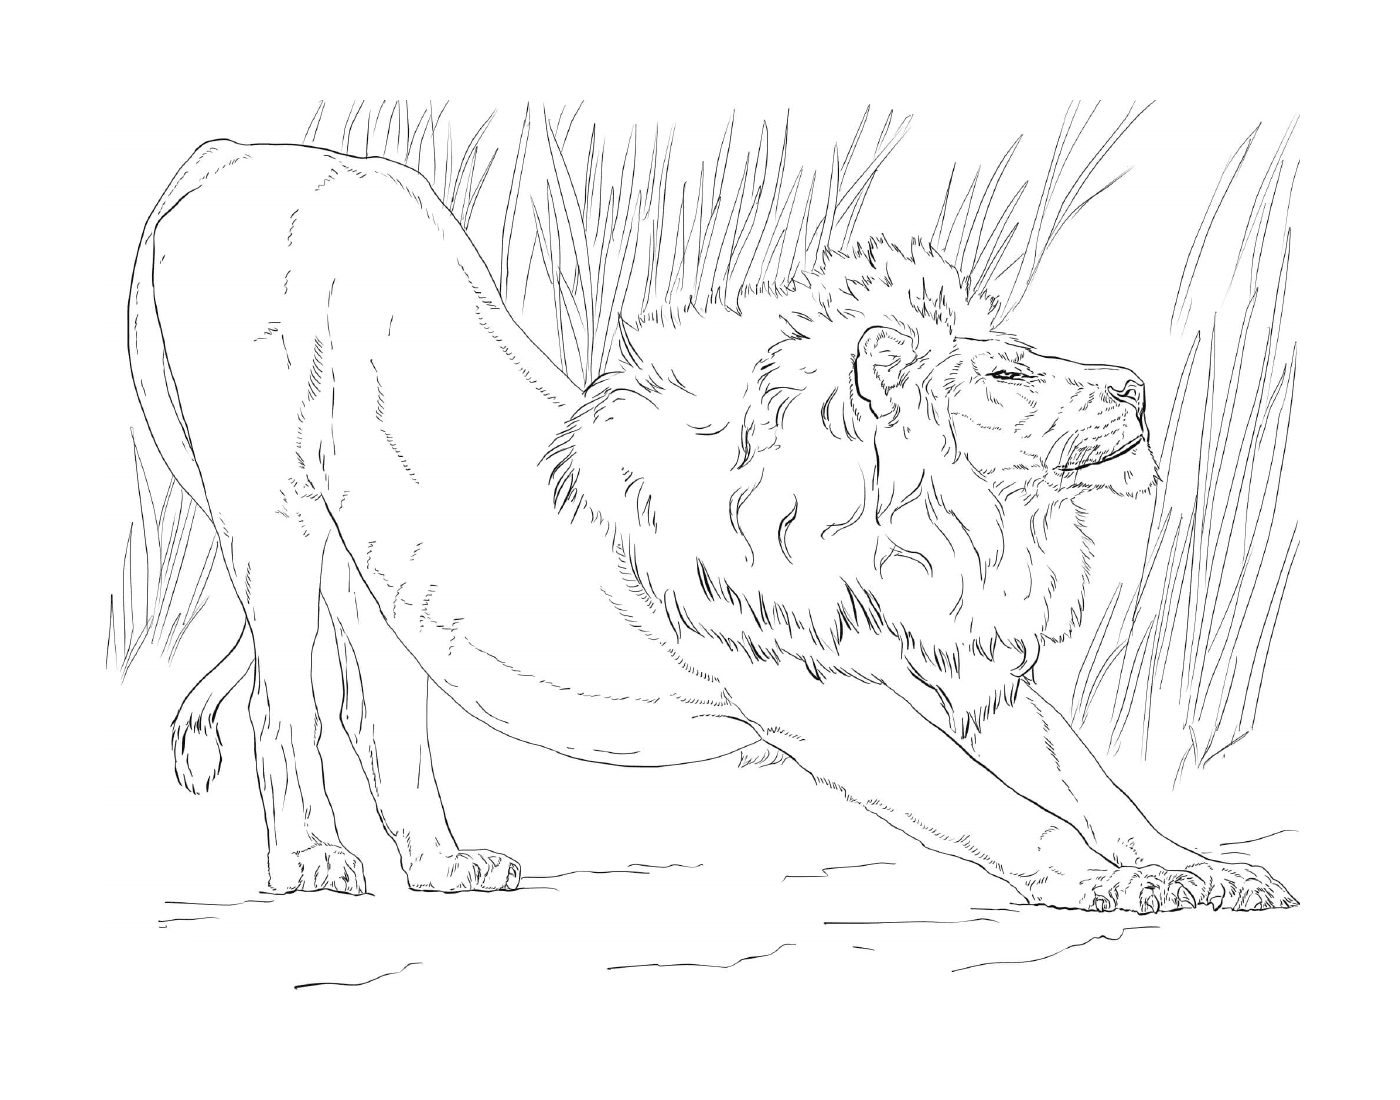  самец льва, растянутого перед высокими травами 